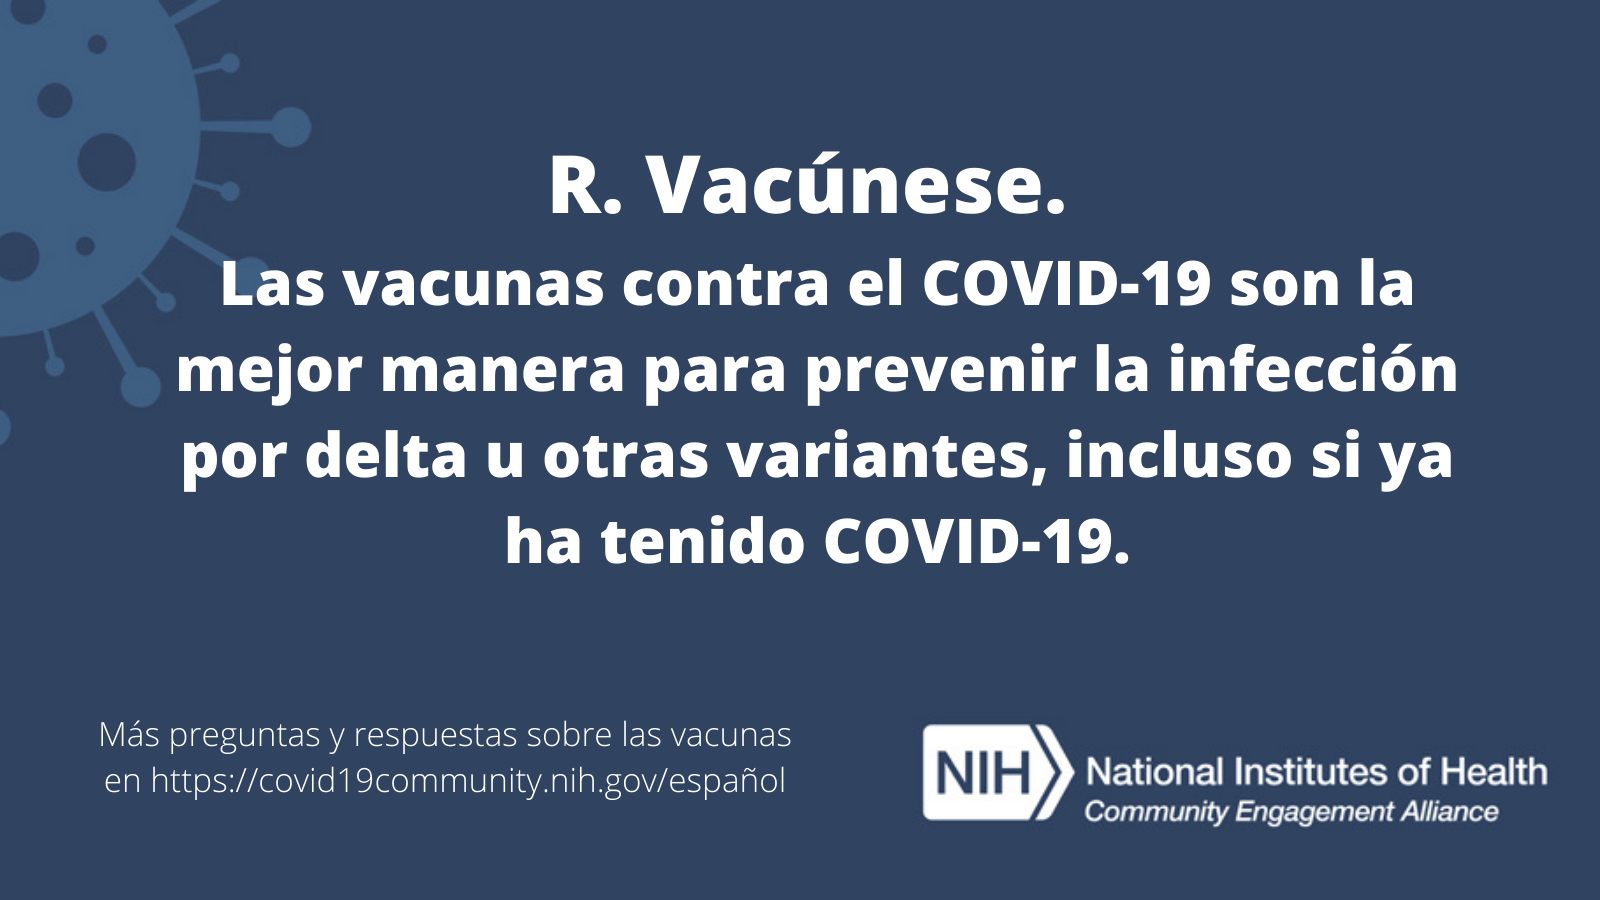 R. Vacúnese. Las vacunas contra el COVID-19 son la mejor manera para prevenir la infección por delta u otras variantes, incluso si ya ha tenido COVID-19. Más preguntas y respuestas sobre las vacunas en covid19community.nih.gov/español.